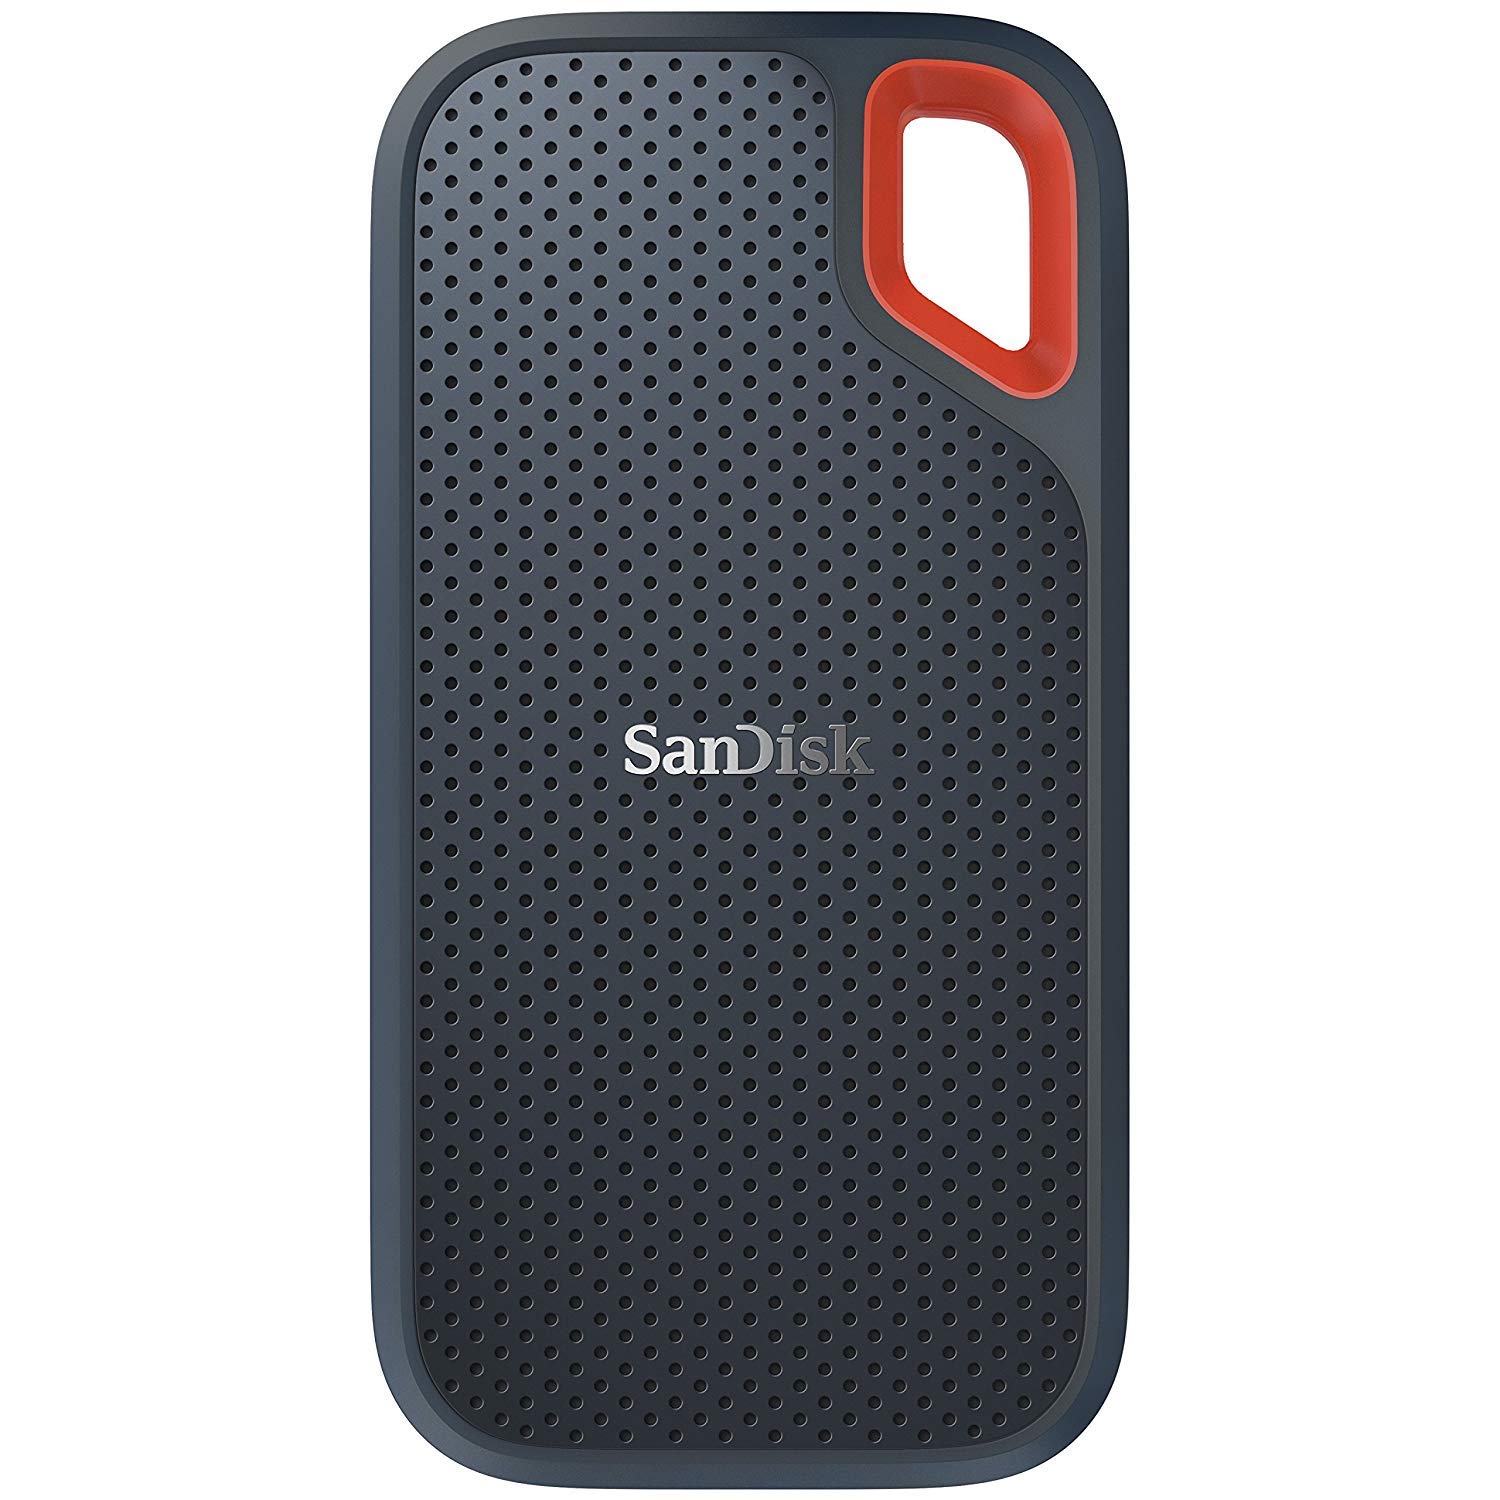 SanDisk 250 GB extrem tragbare externe SSD